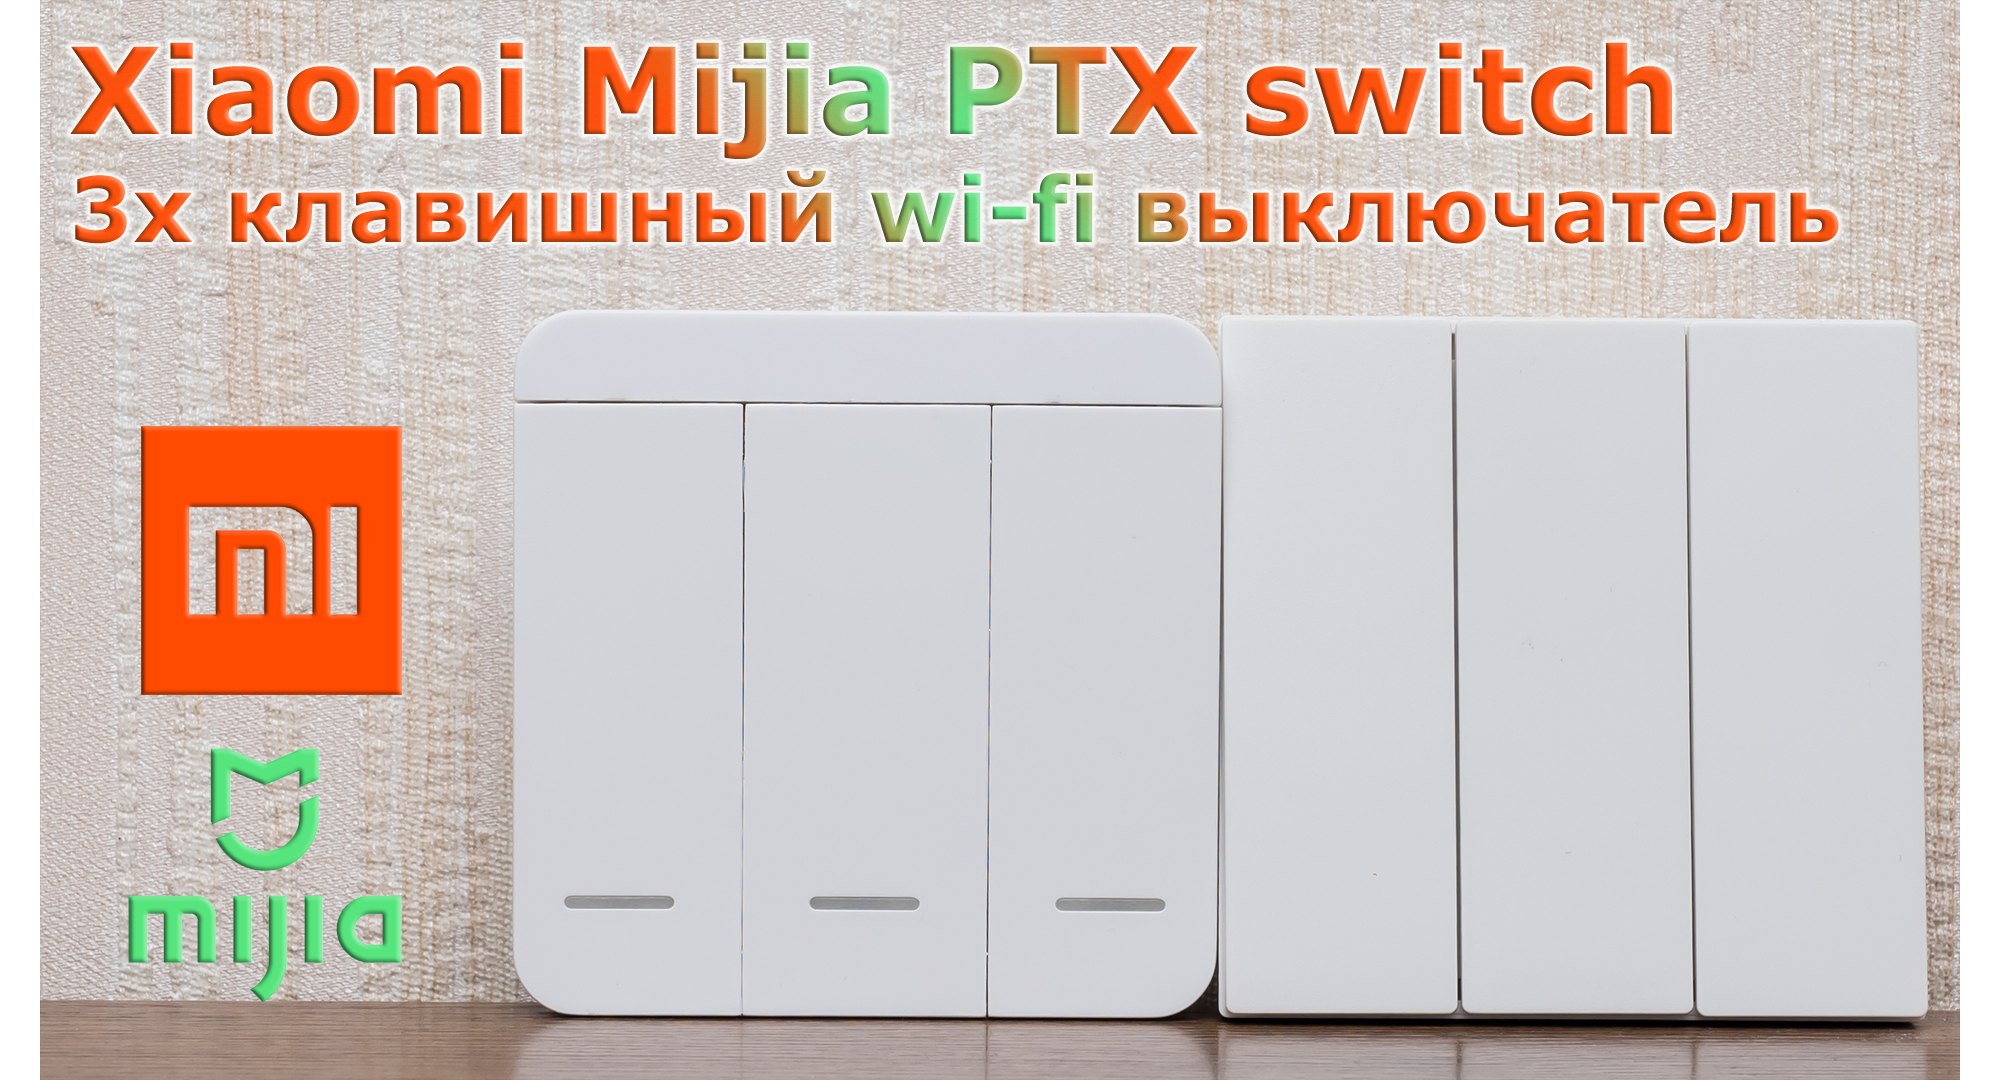 Xiaomi Mijia PTX switch: مفتاح Wi-Fi ذكي مع مكرر 21